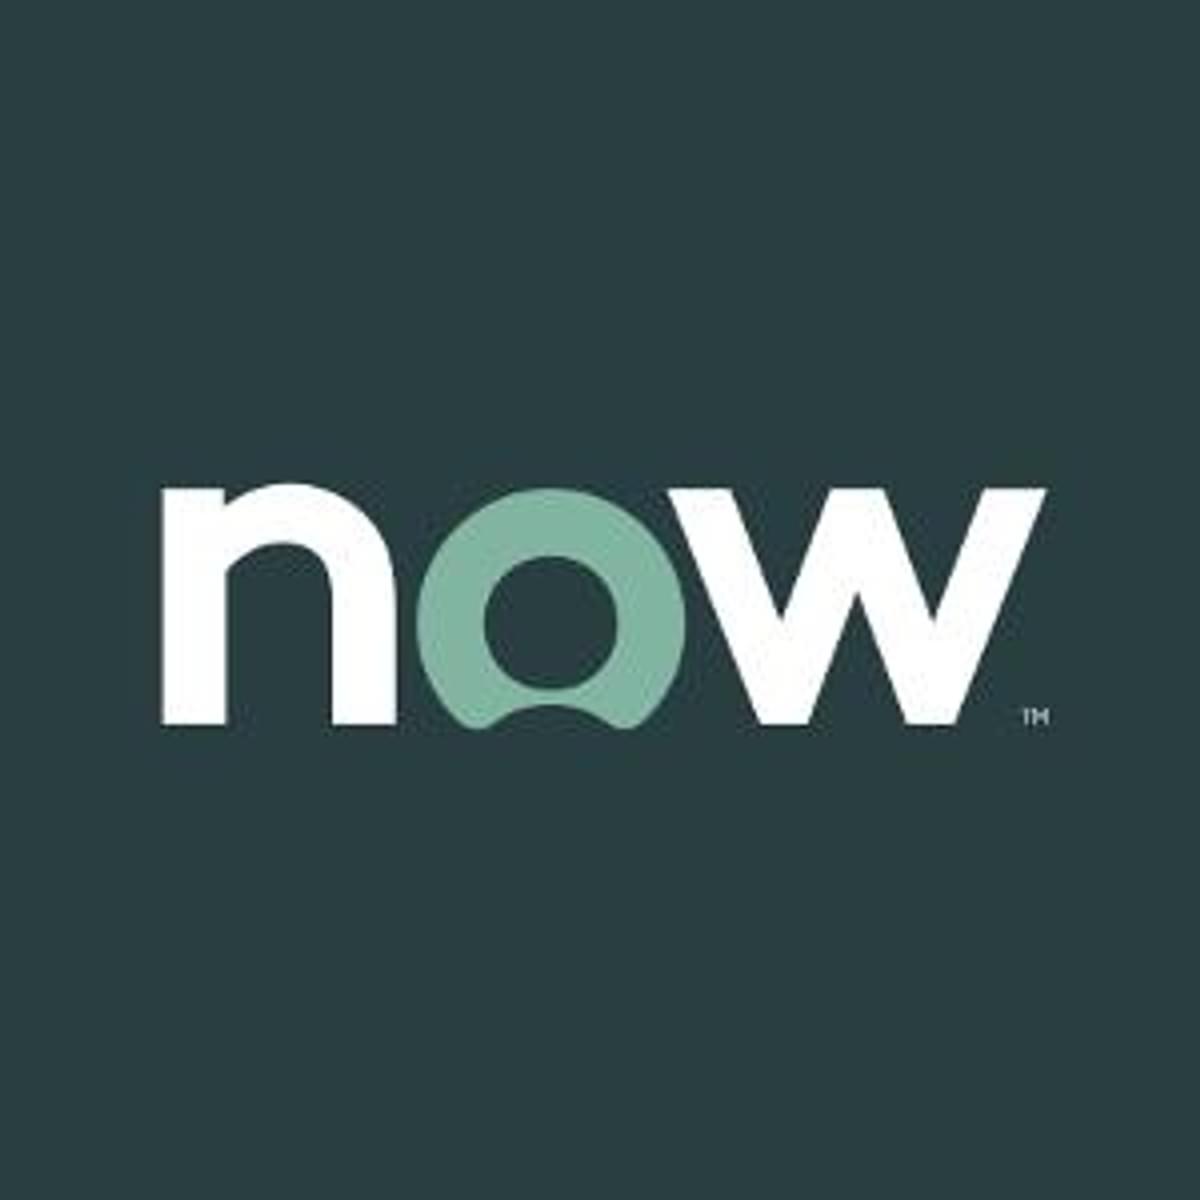 ServiceNow ziet omzet uit abonnementen flink toenemen image